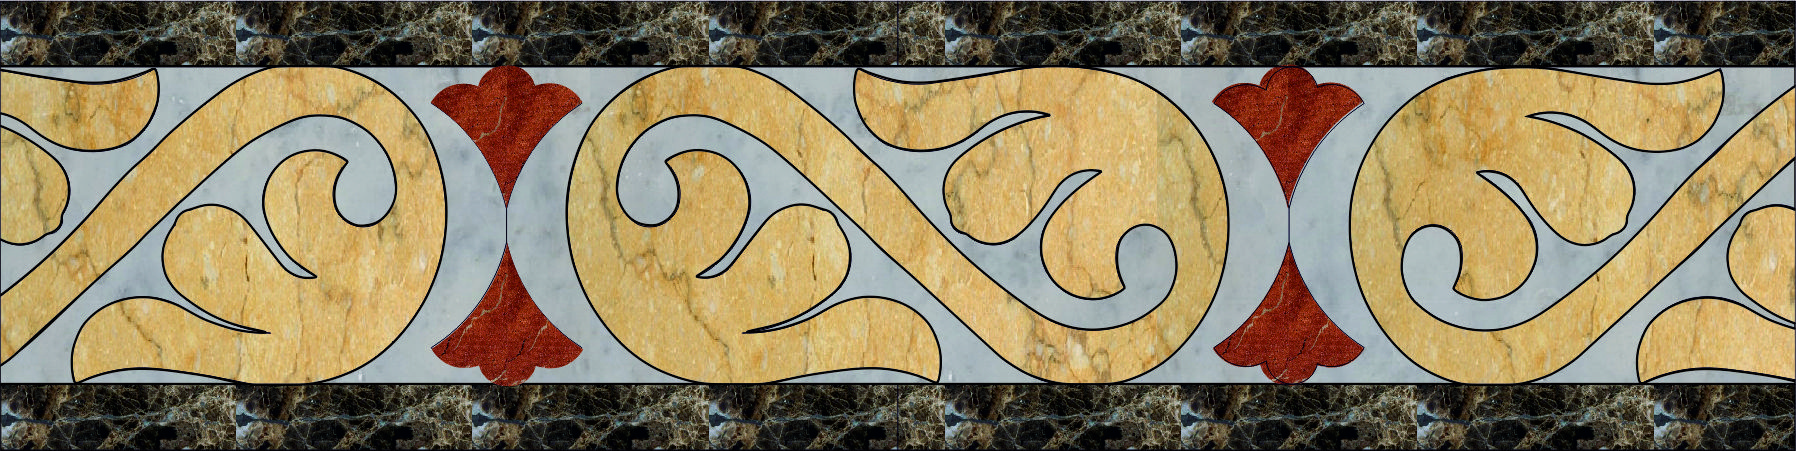 Каменный бордюр панно, арт. Б 4-3, размер, мм: 600х150х20.